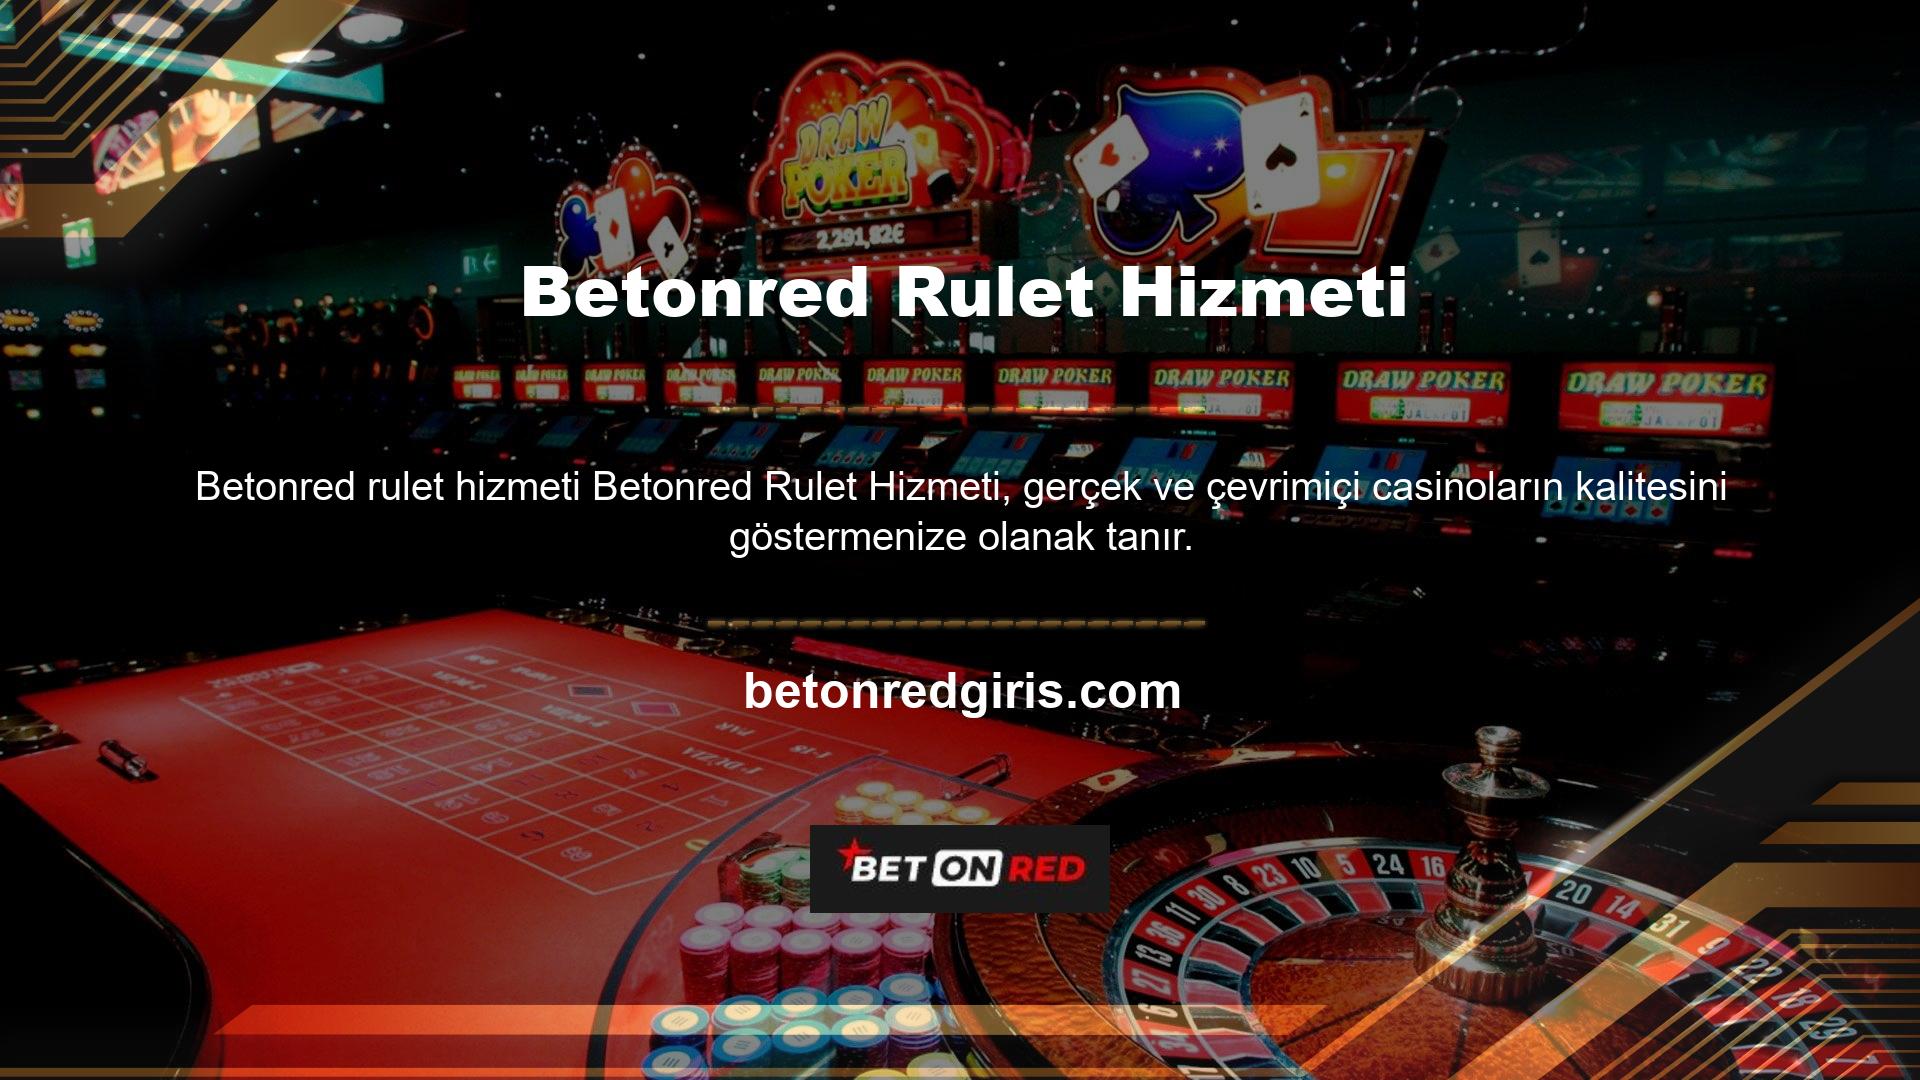 Betonred casino sitesi kuruldu ancak hızla gelişerek Alman ciltçilik endüstrisinin öncülerinden biri haline geldi